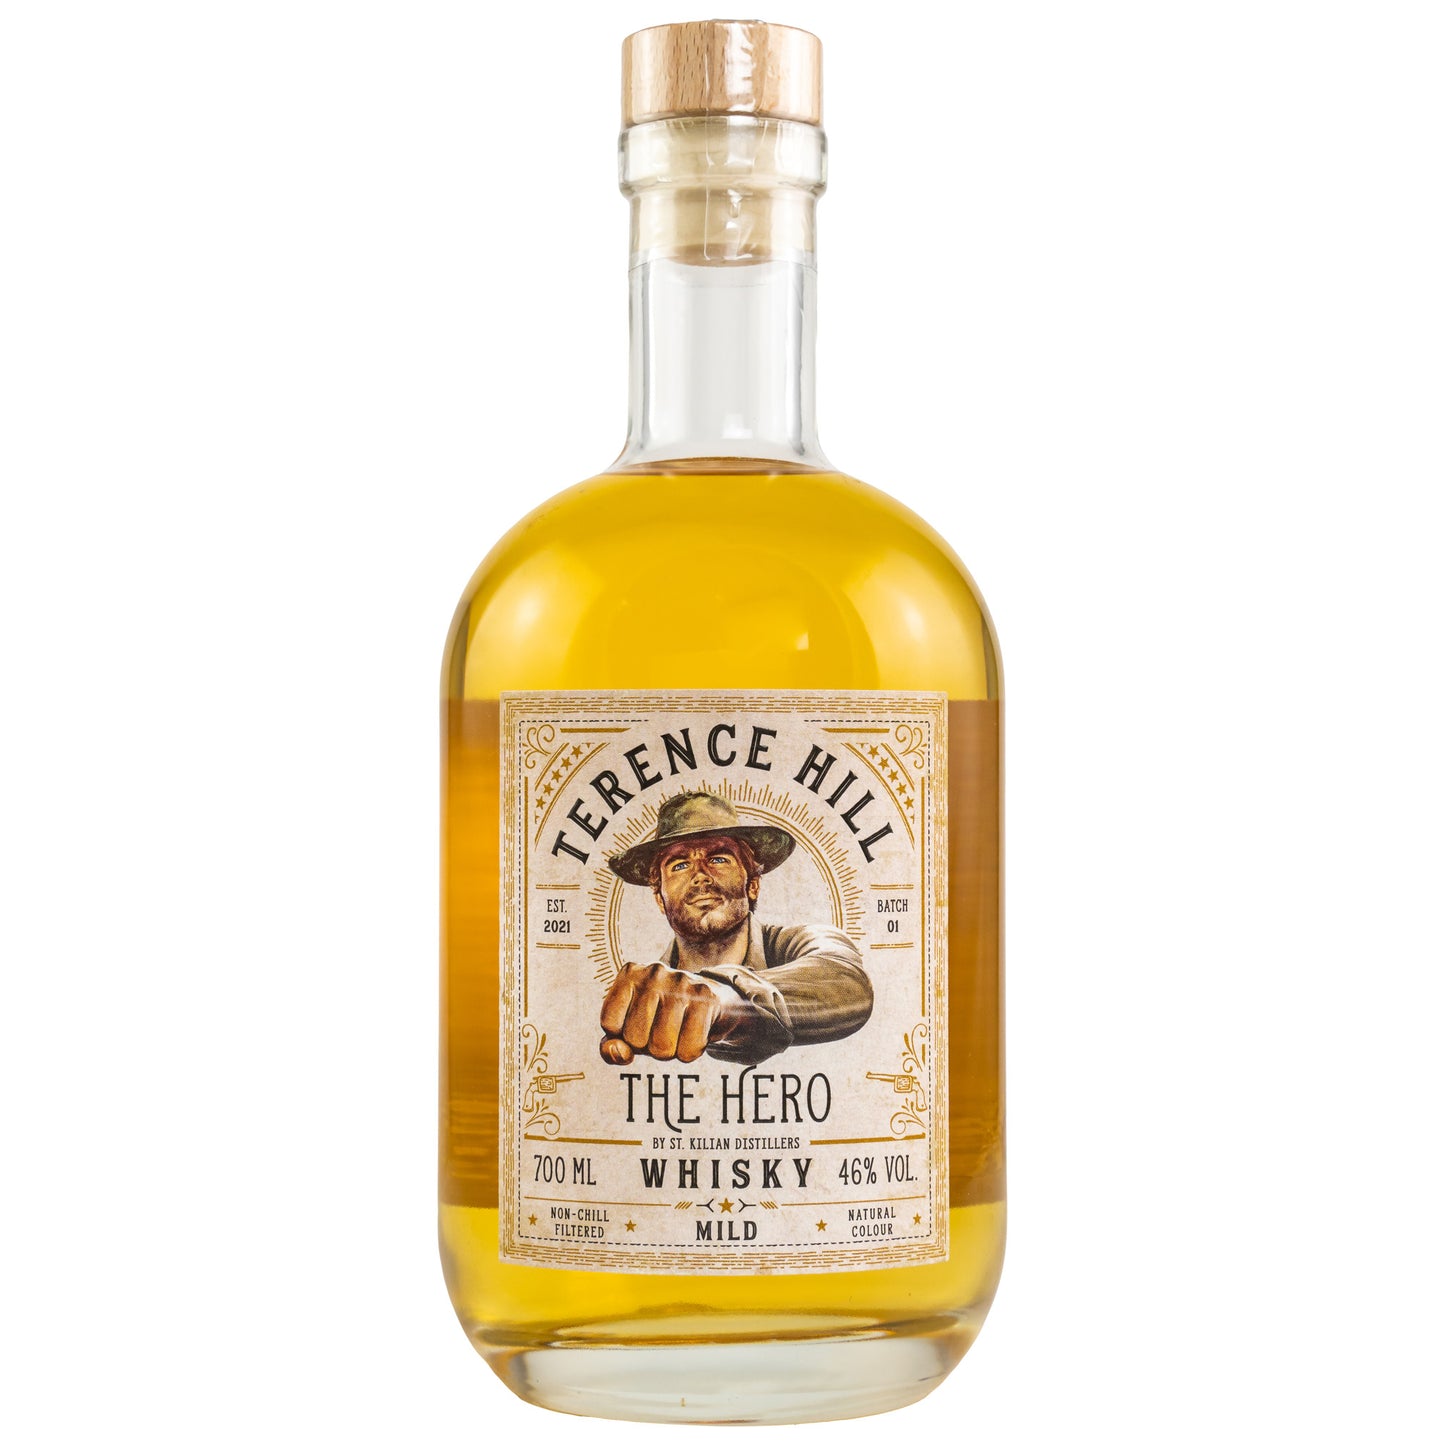 Bud Spencer & Terence Hill Whisky Bundle - 46% Vol.